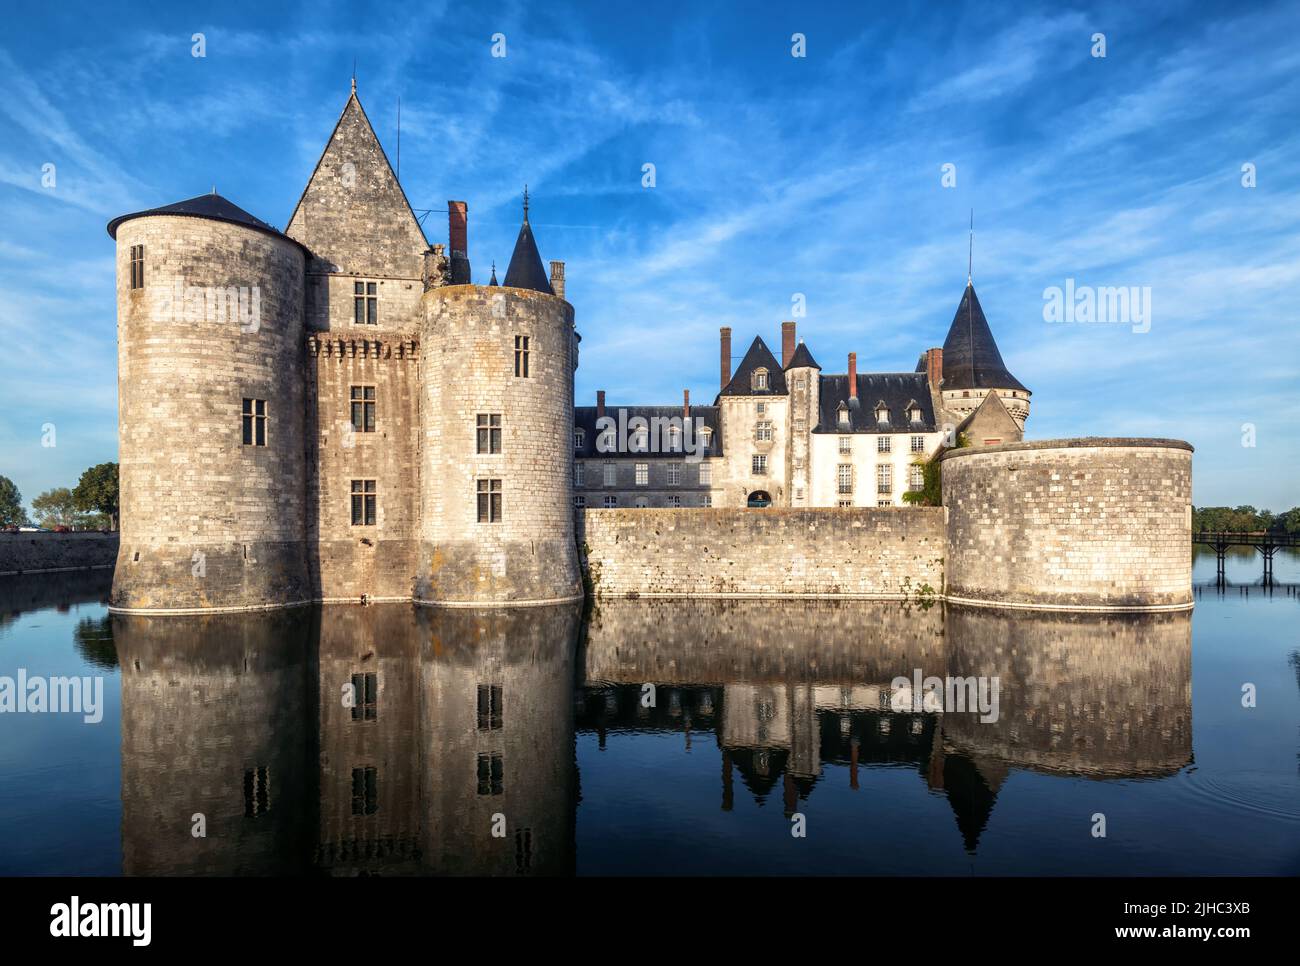 Castillo de Sully-sur-Loire, Francia. Es un punto de referencia del Valle del Loira. Vista del castillo medieval francés como fortaleza en medio del río, paisaje de Foto de stock